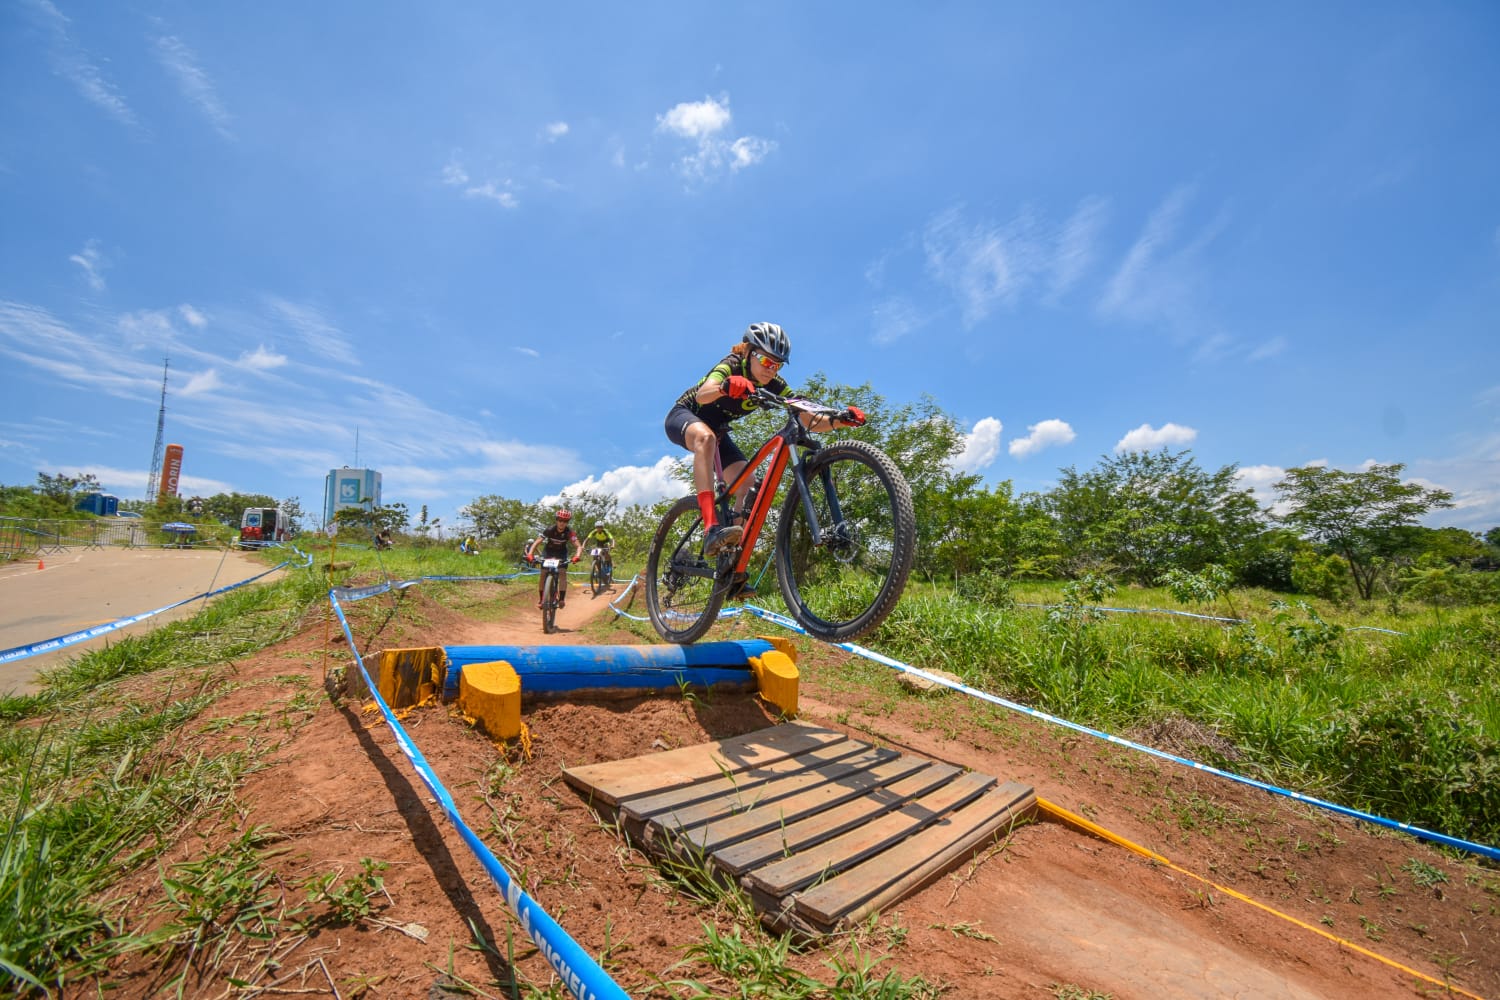 Atleta Porteirinhense volta a se destacar em desafio de Mountain Bike, realizado em Telêmaco Borba no Paraná.